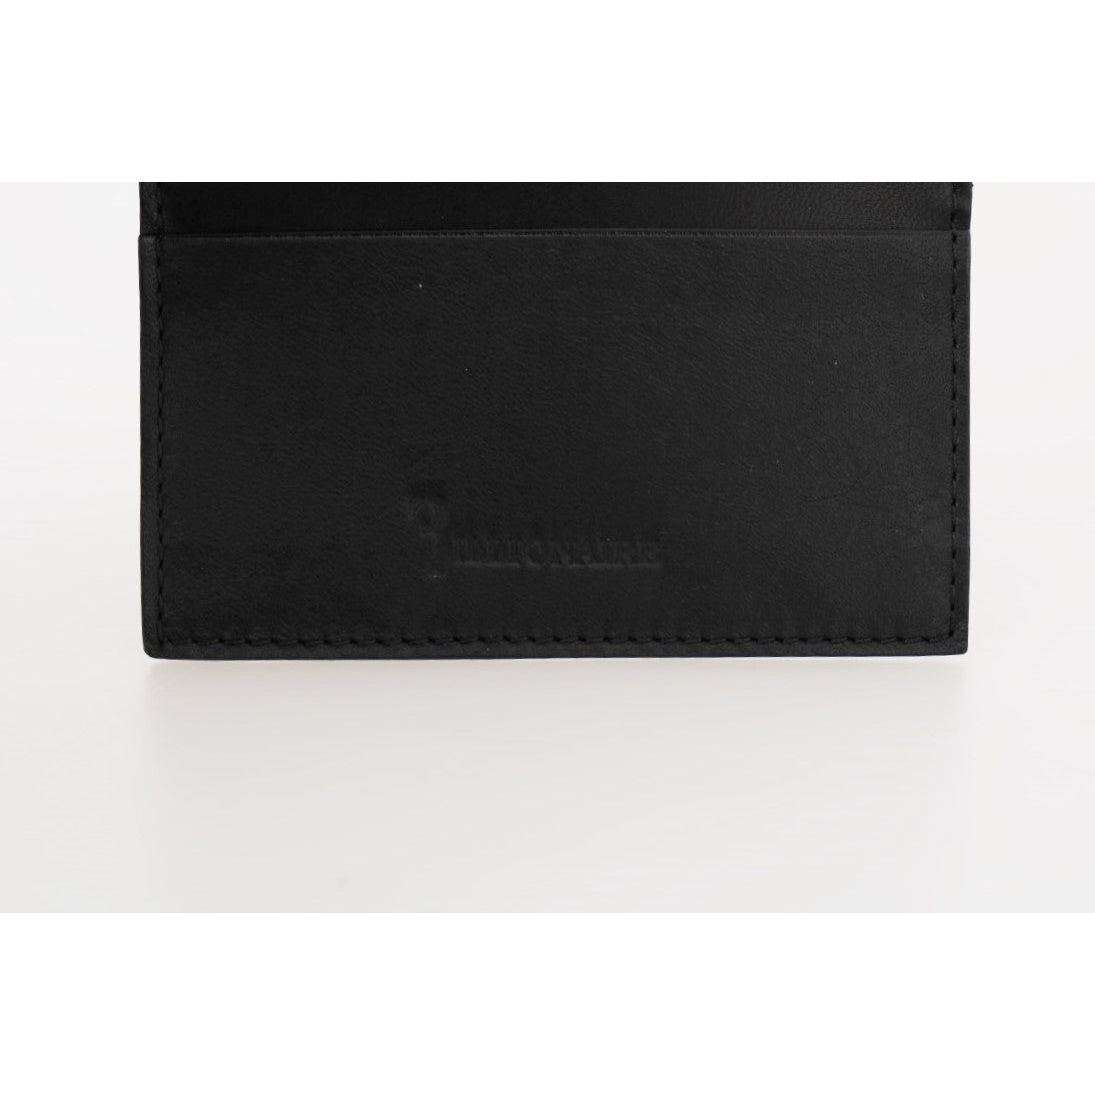 Billionaire Italian Couture Exquisite Black Leather Men's Wallet Wallet black-leather-cardholder-wallet